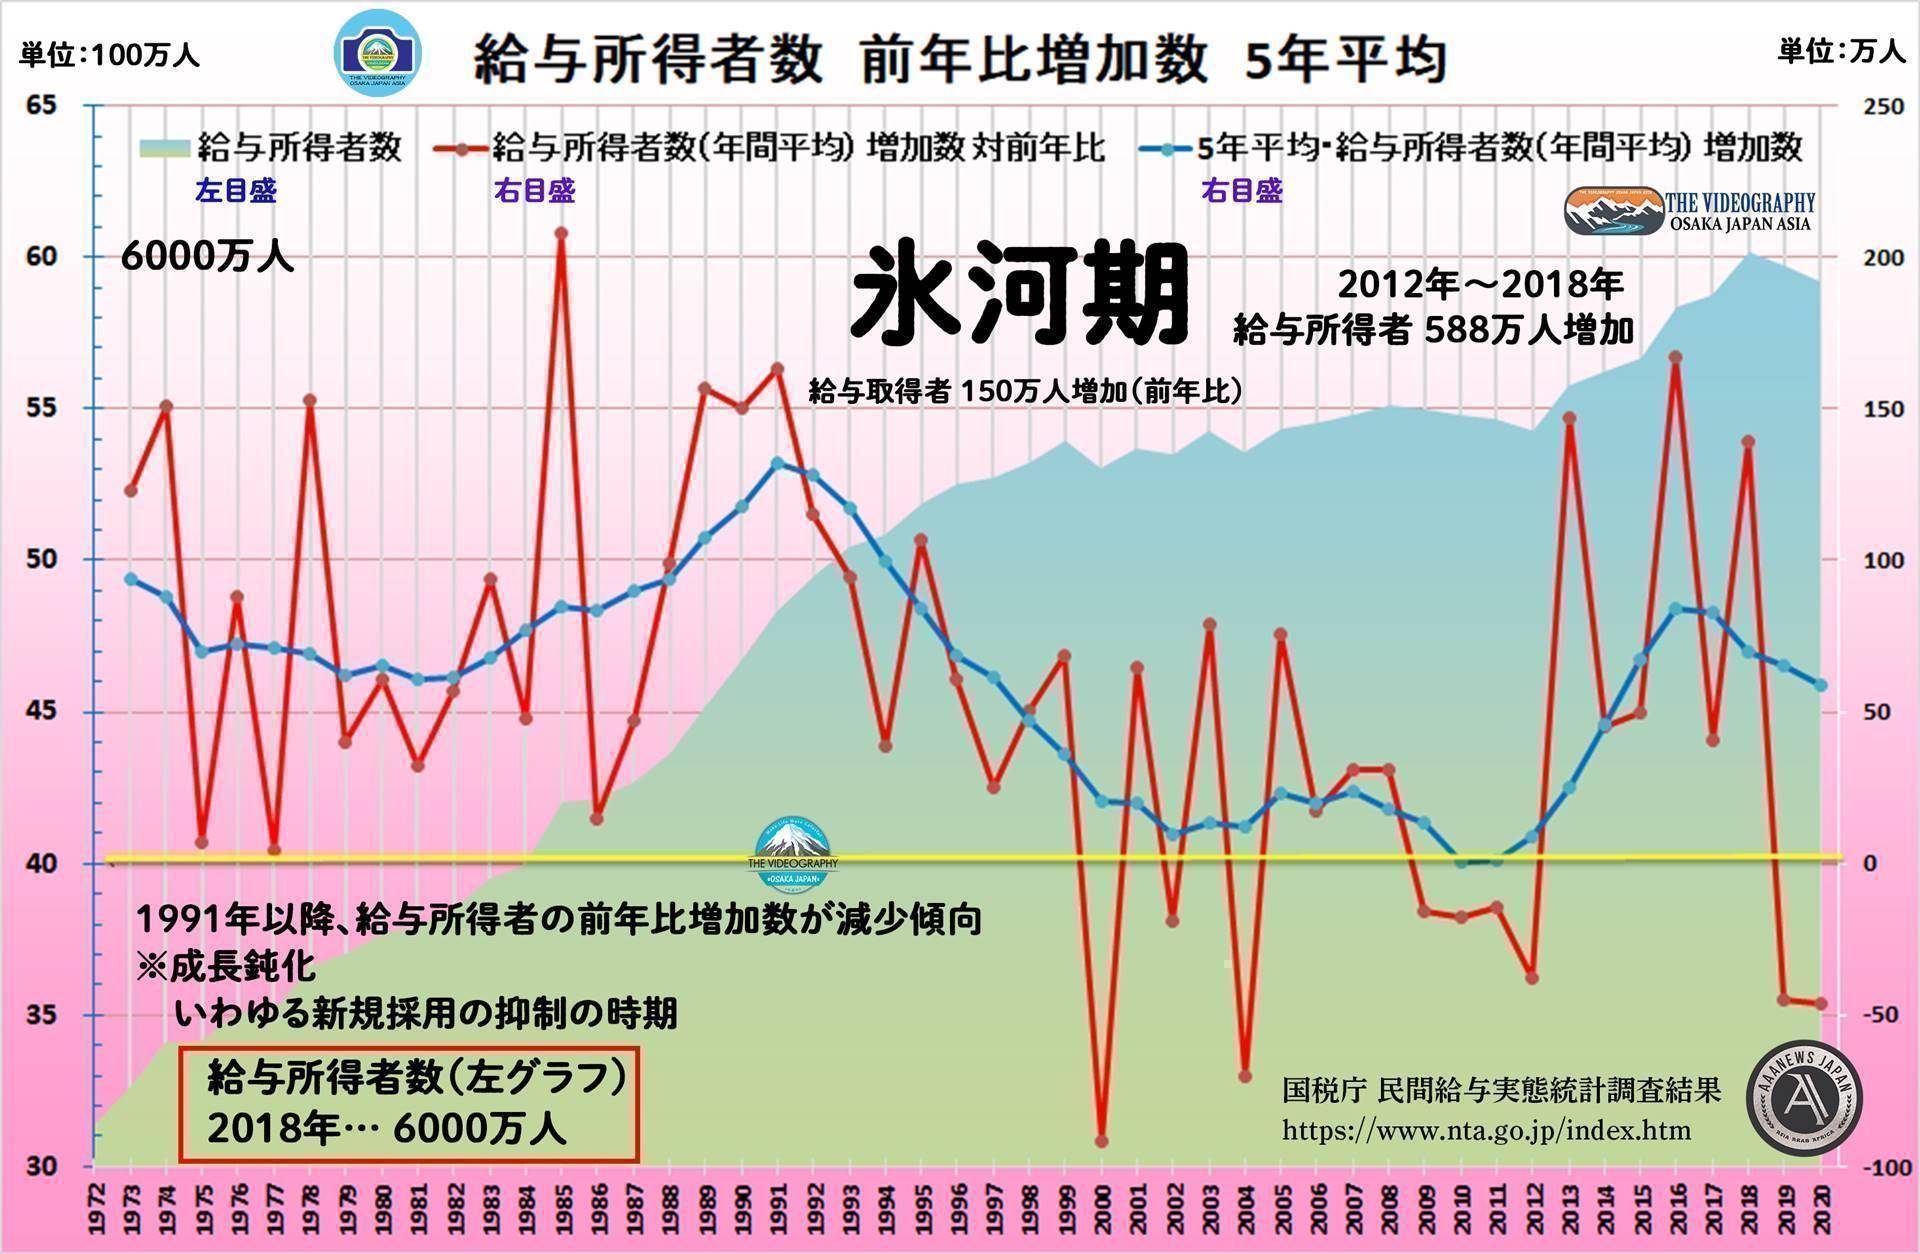 給与所得者数から見た日本経済 1991年～2012年まで下落または停滞